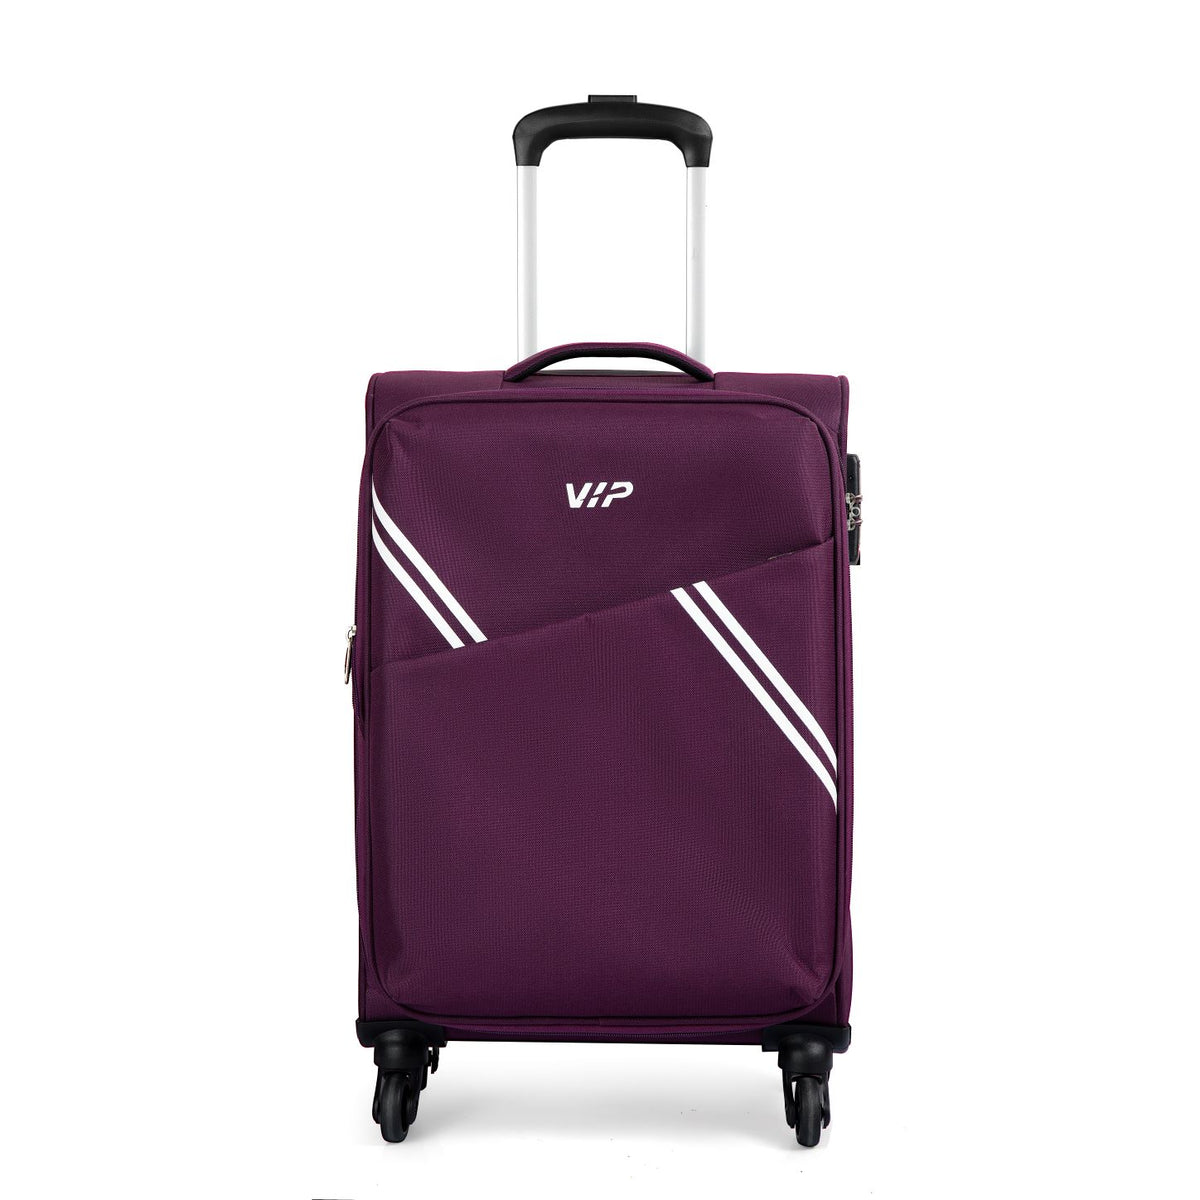 VIP Verona 59cm,4 Wheel Cabin Luggage Trolley, Purple, VERONA59PR